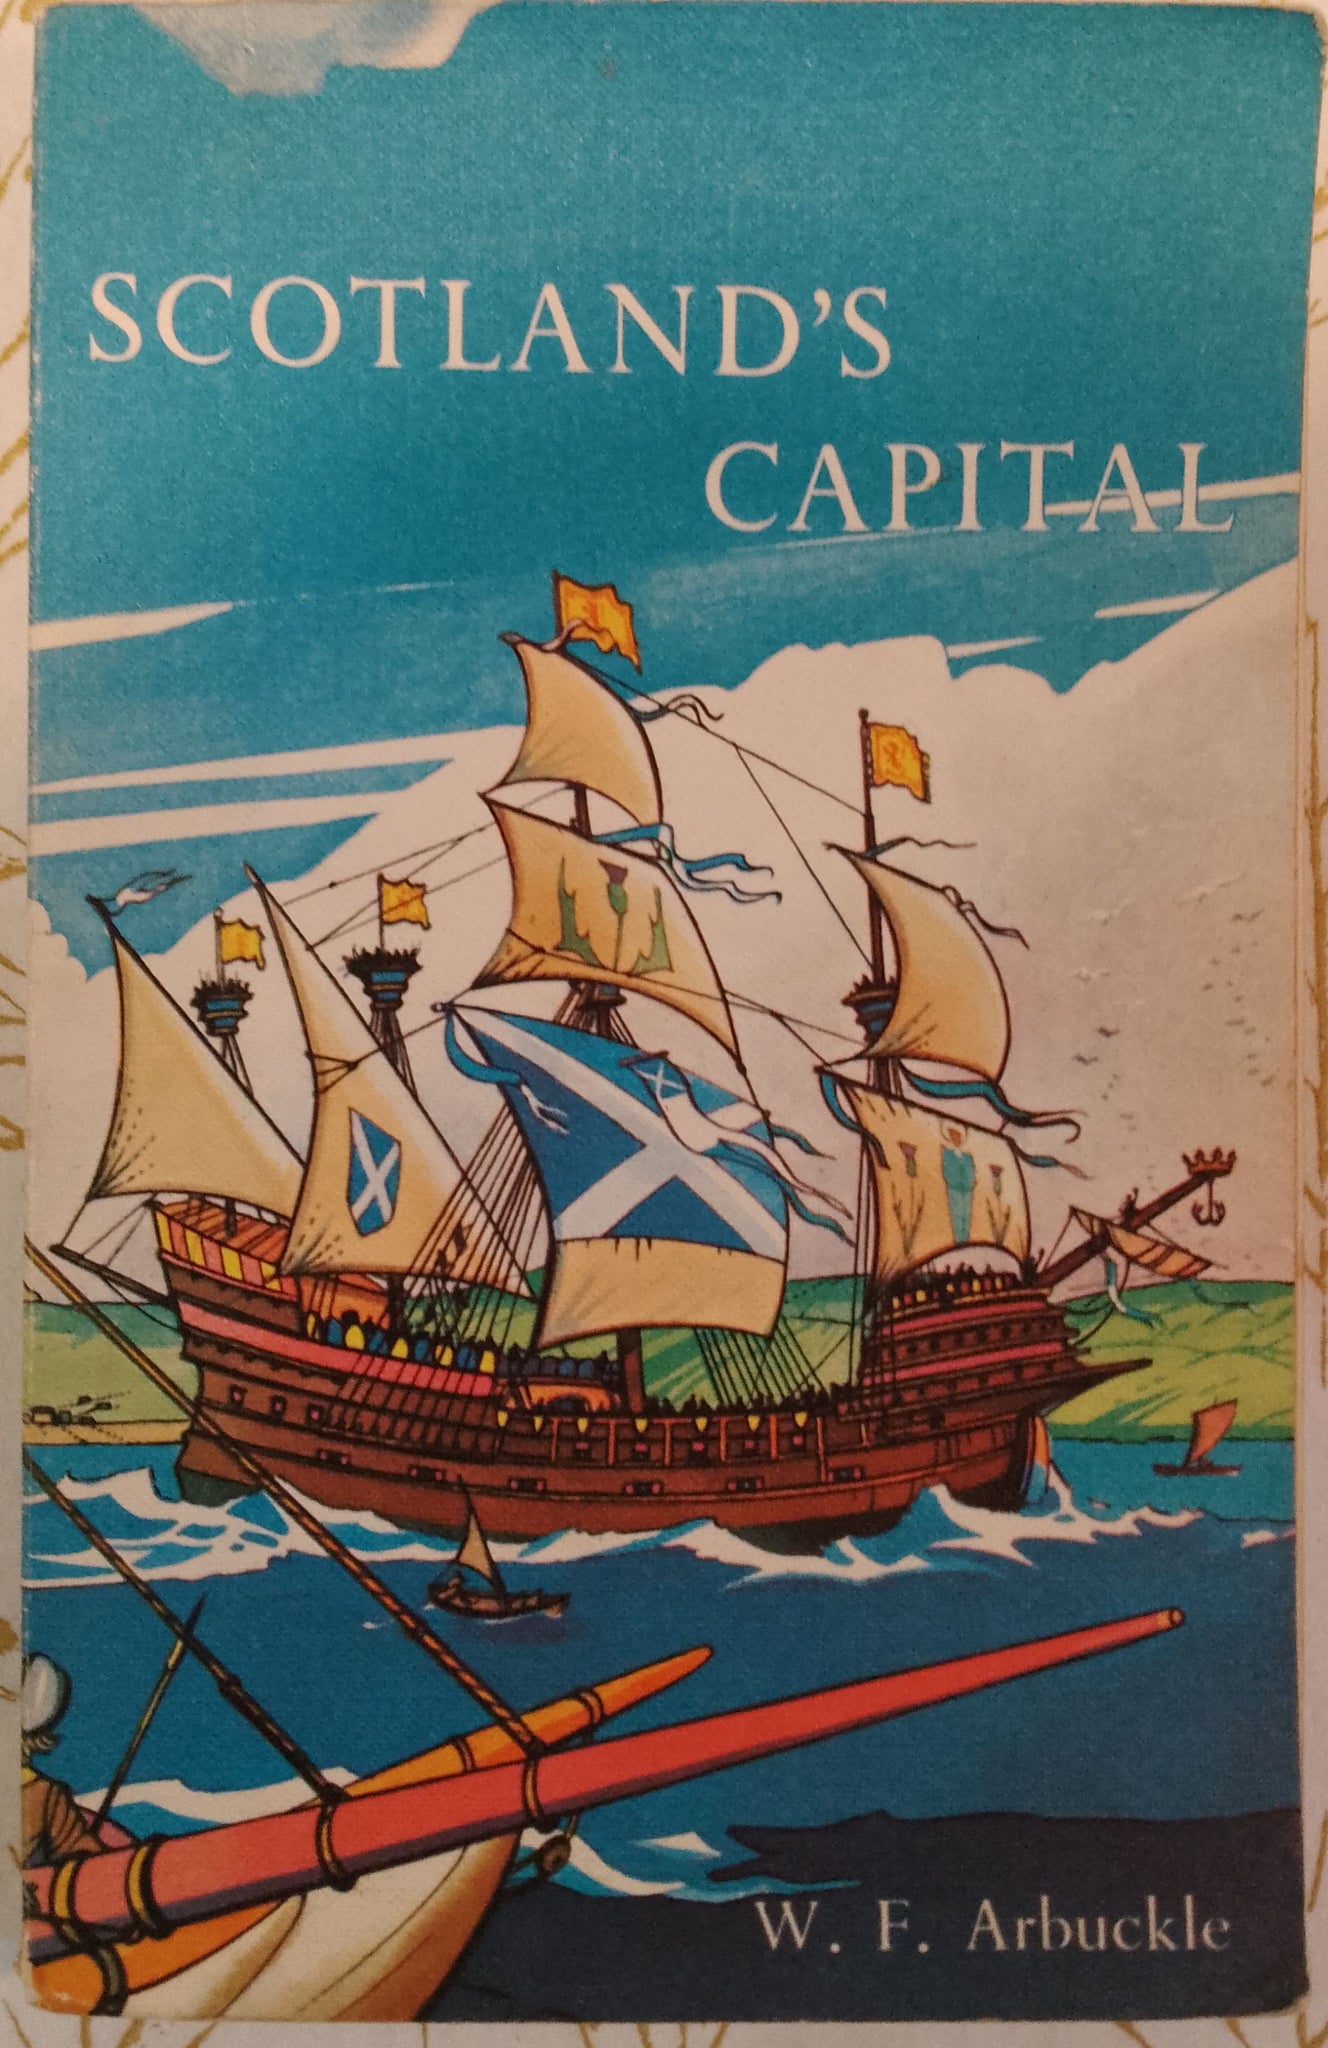 Scotland's Capital by W. F. Arbuckle